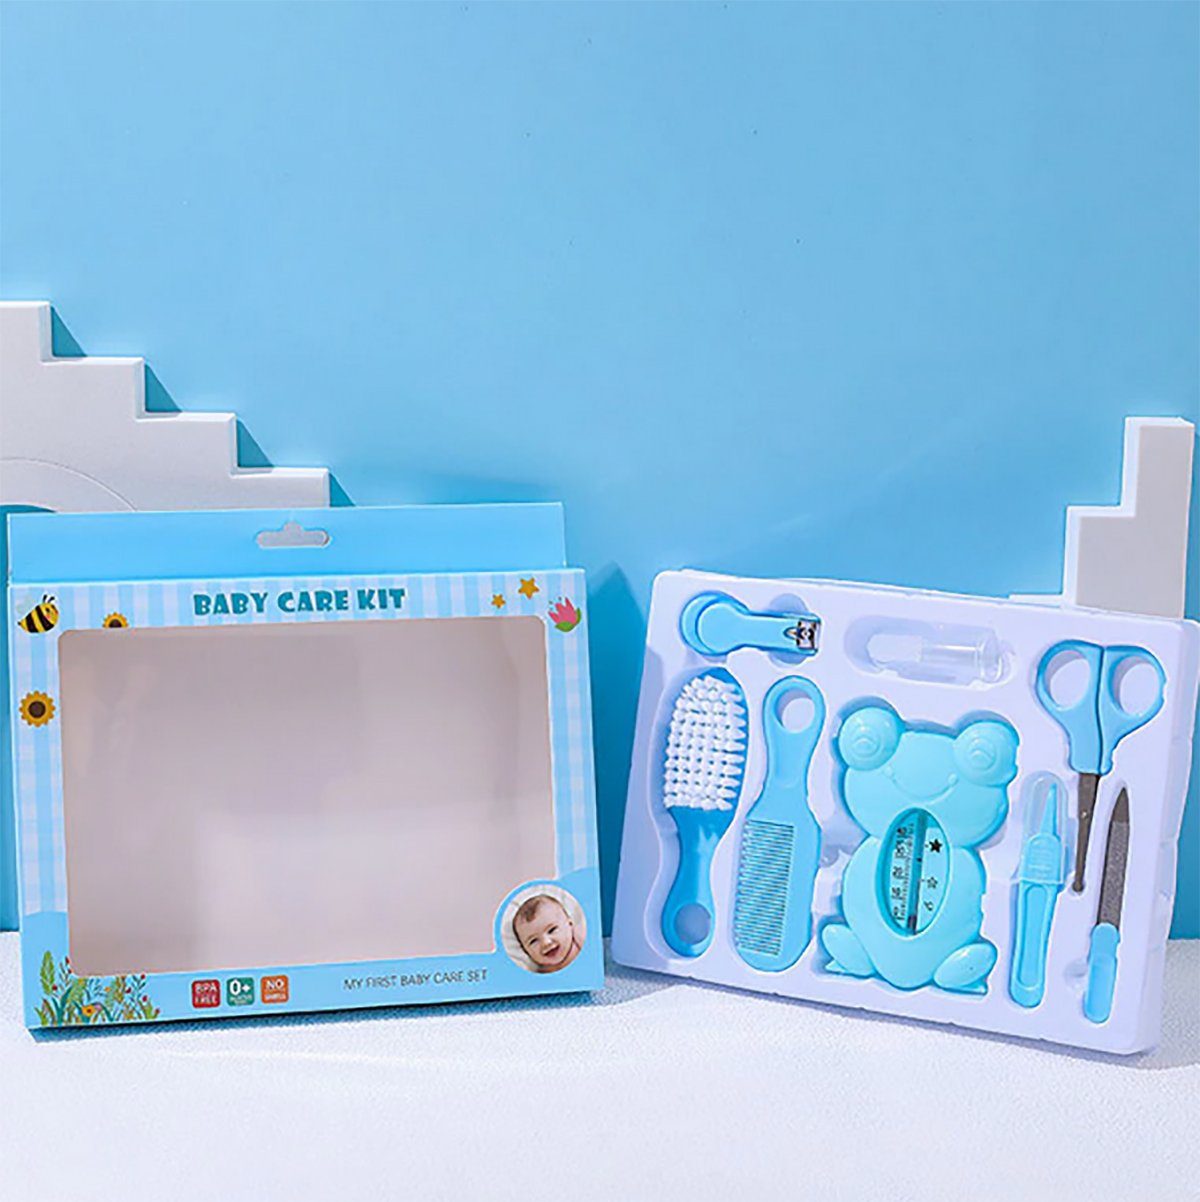 TPFBeauty Neugeborene, für Erstausstattung Pflegeset - Baby Blau tlg., Produkte Pflegeartikel inkl. 8-teiliges 8 Babypflege-Set aller